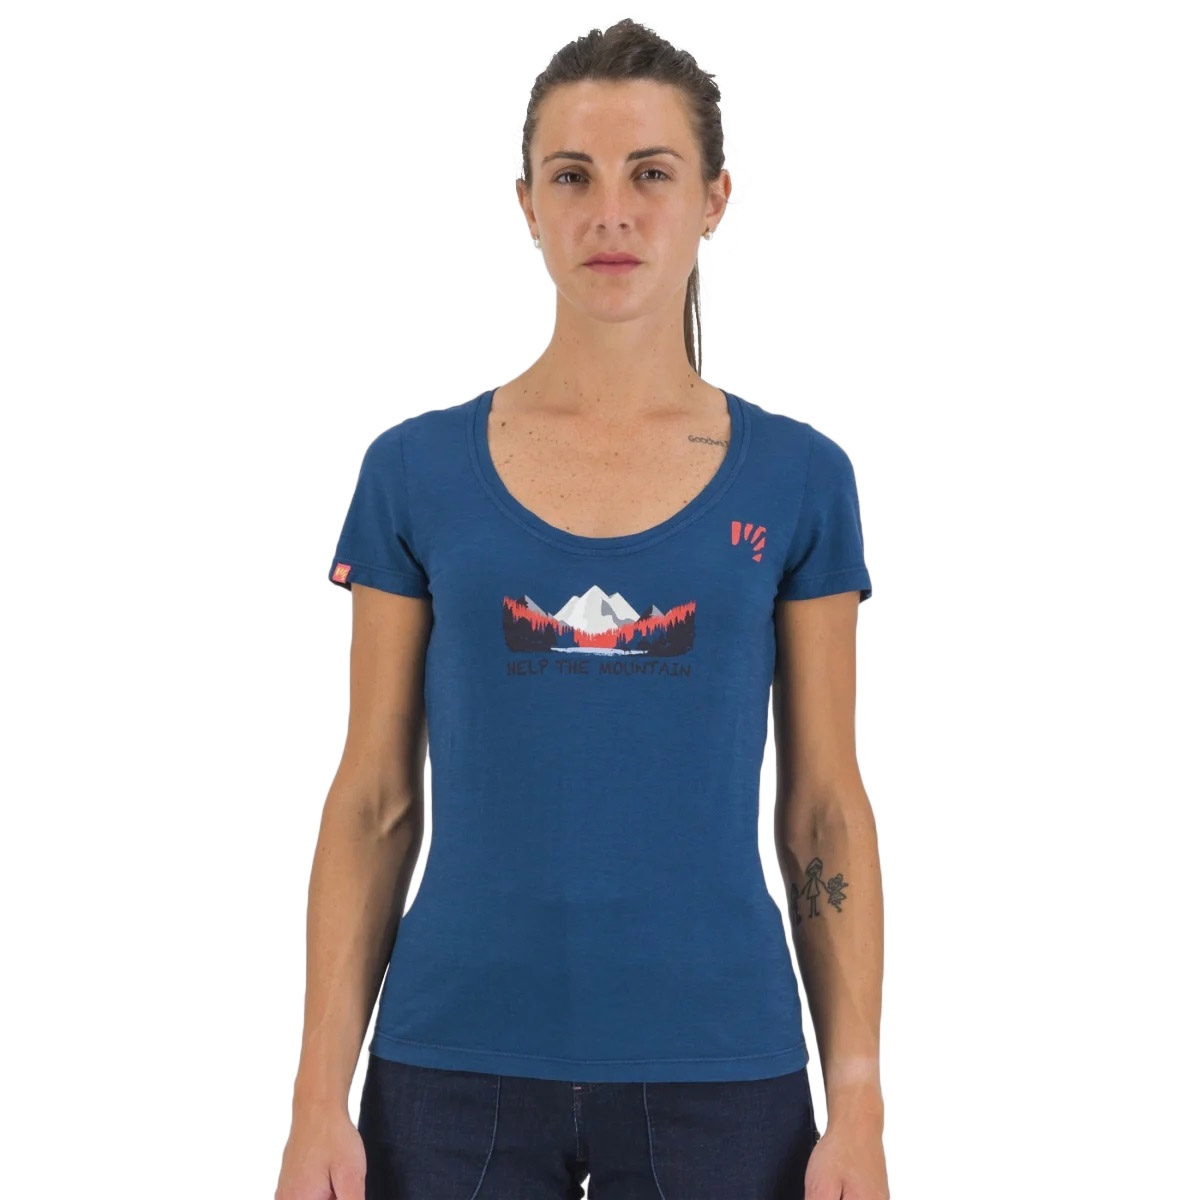 Produktbild von Karpos Ambretta T-Shirt Damen - gibraltar sea